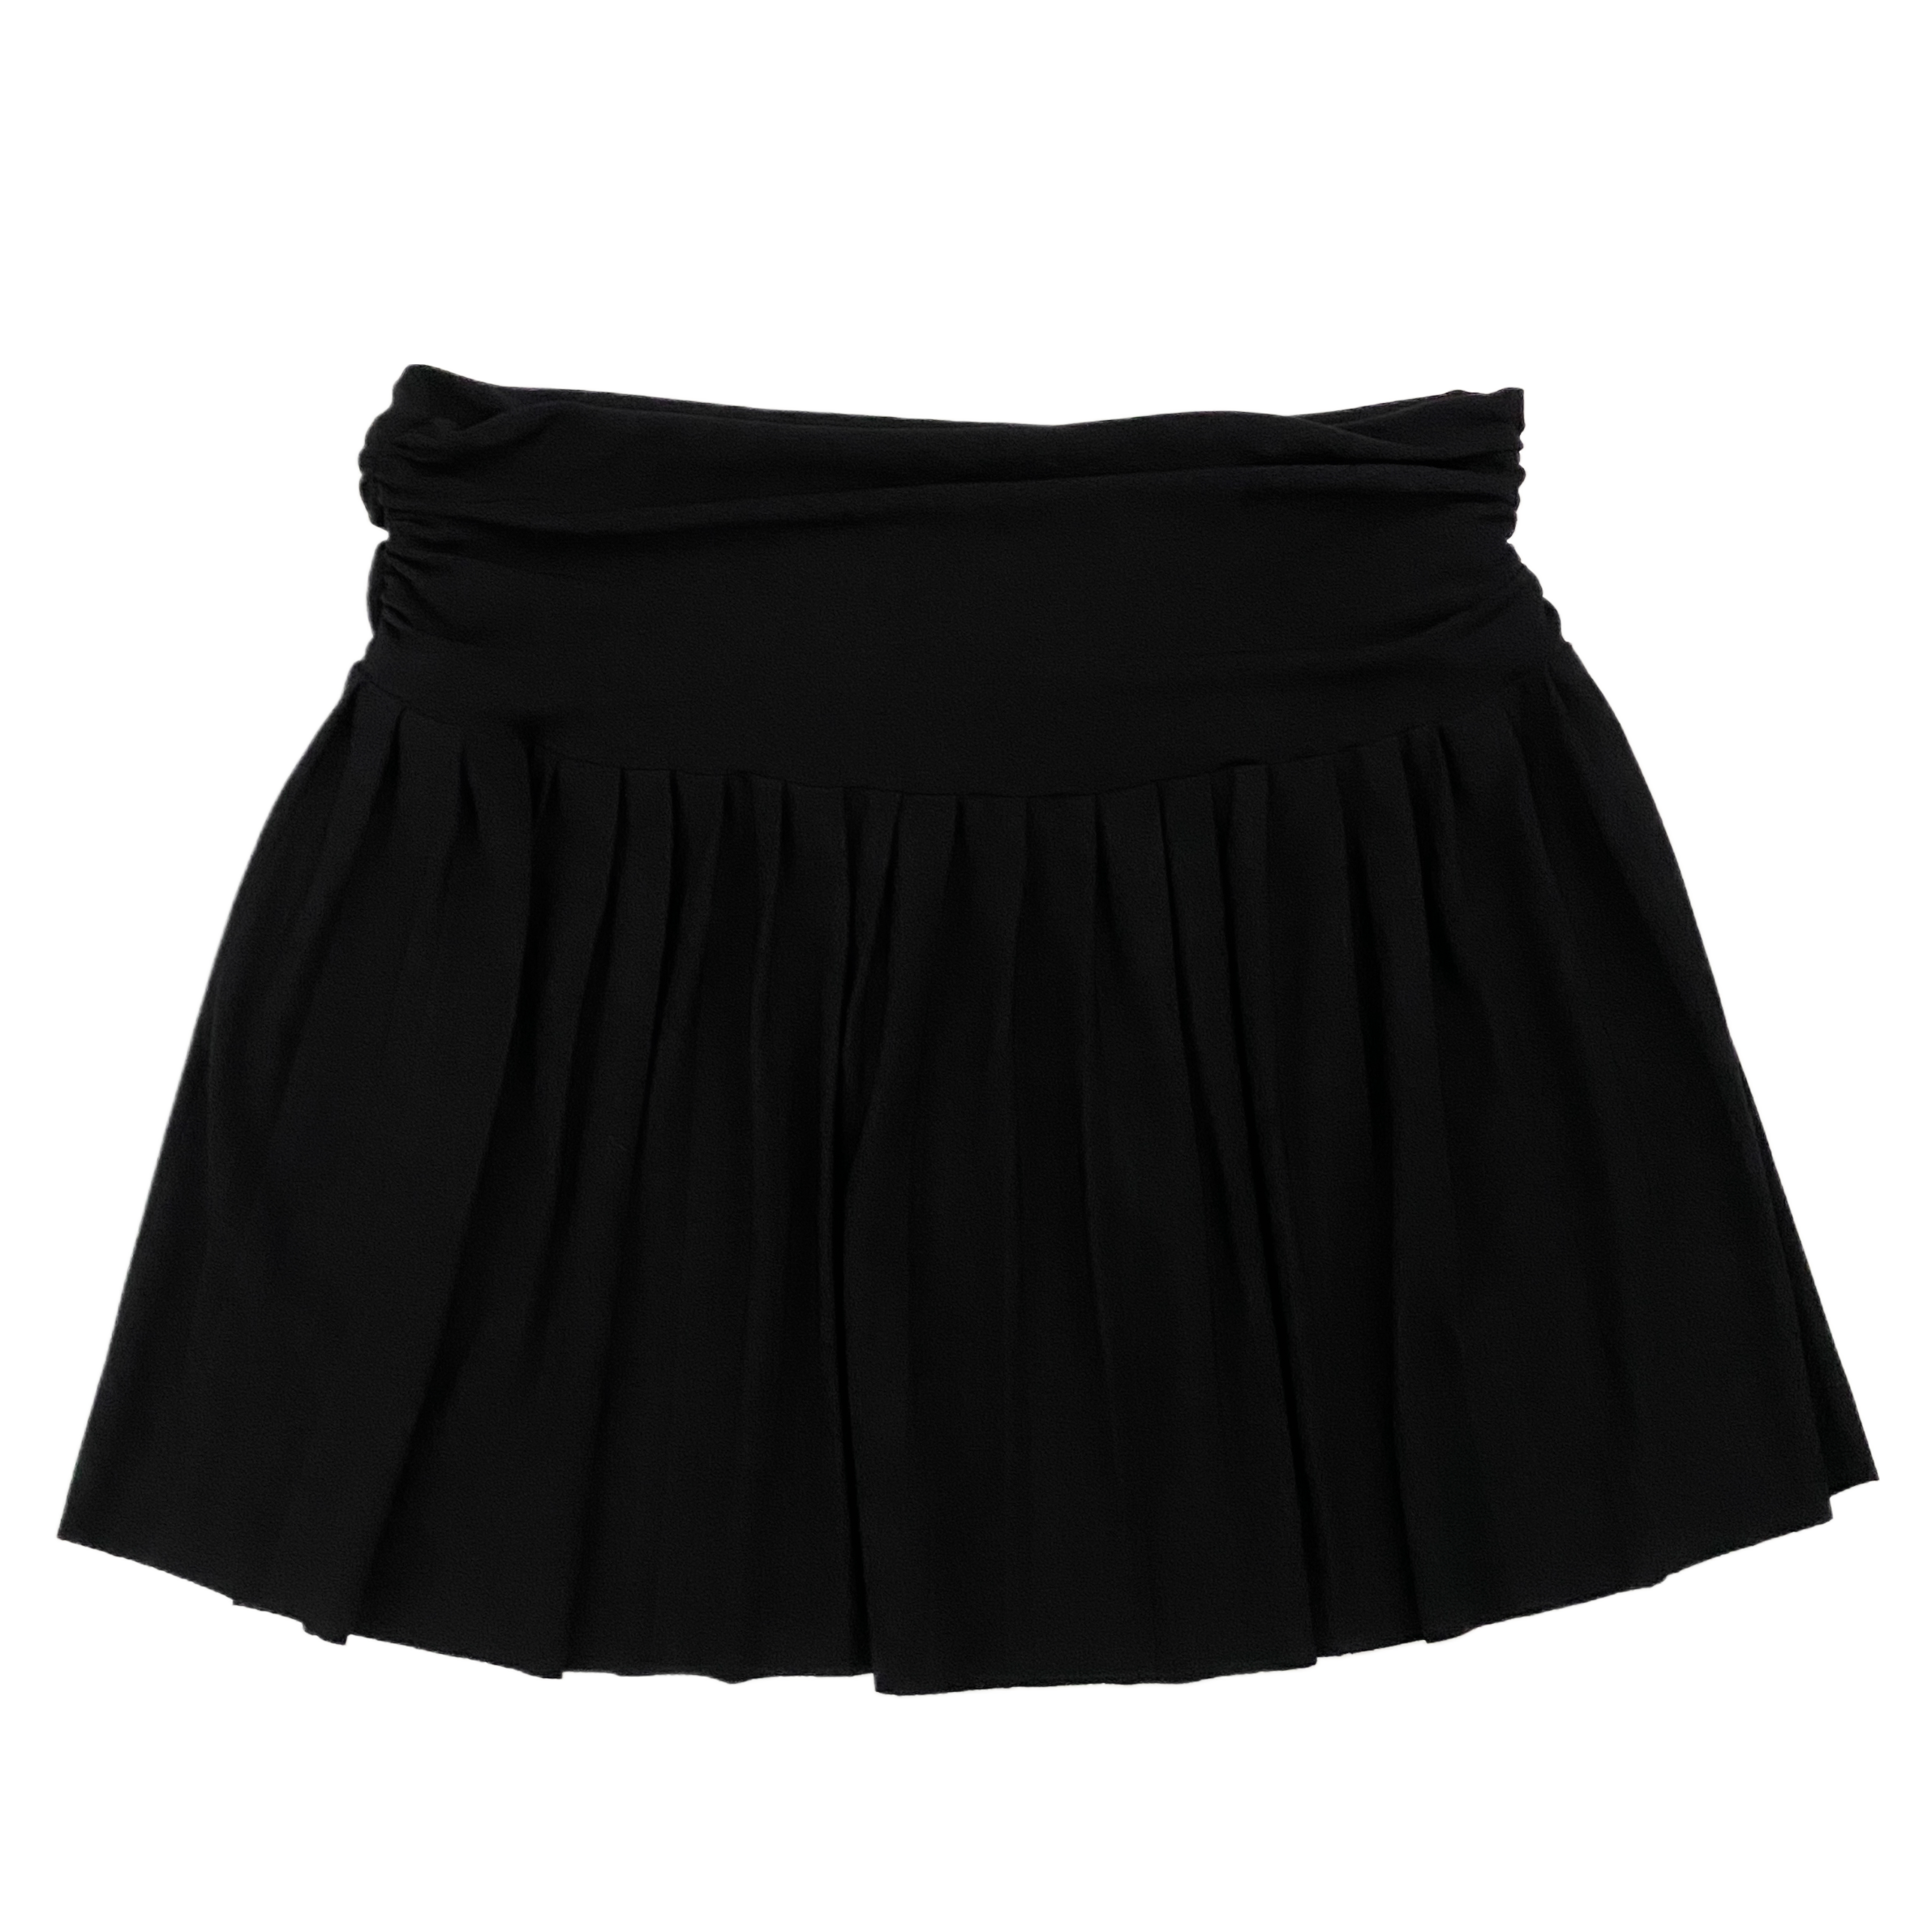 Black Ballet Skirt (S)